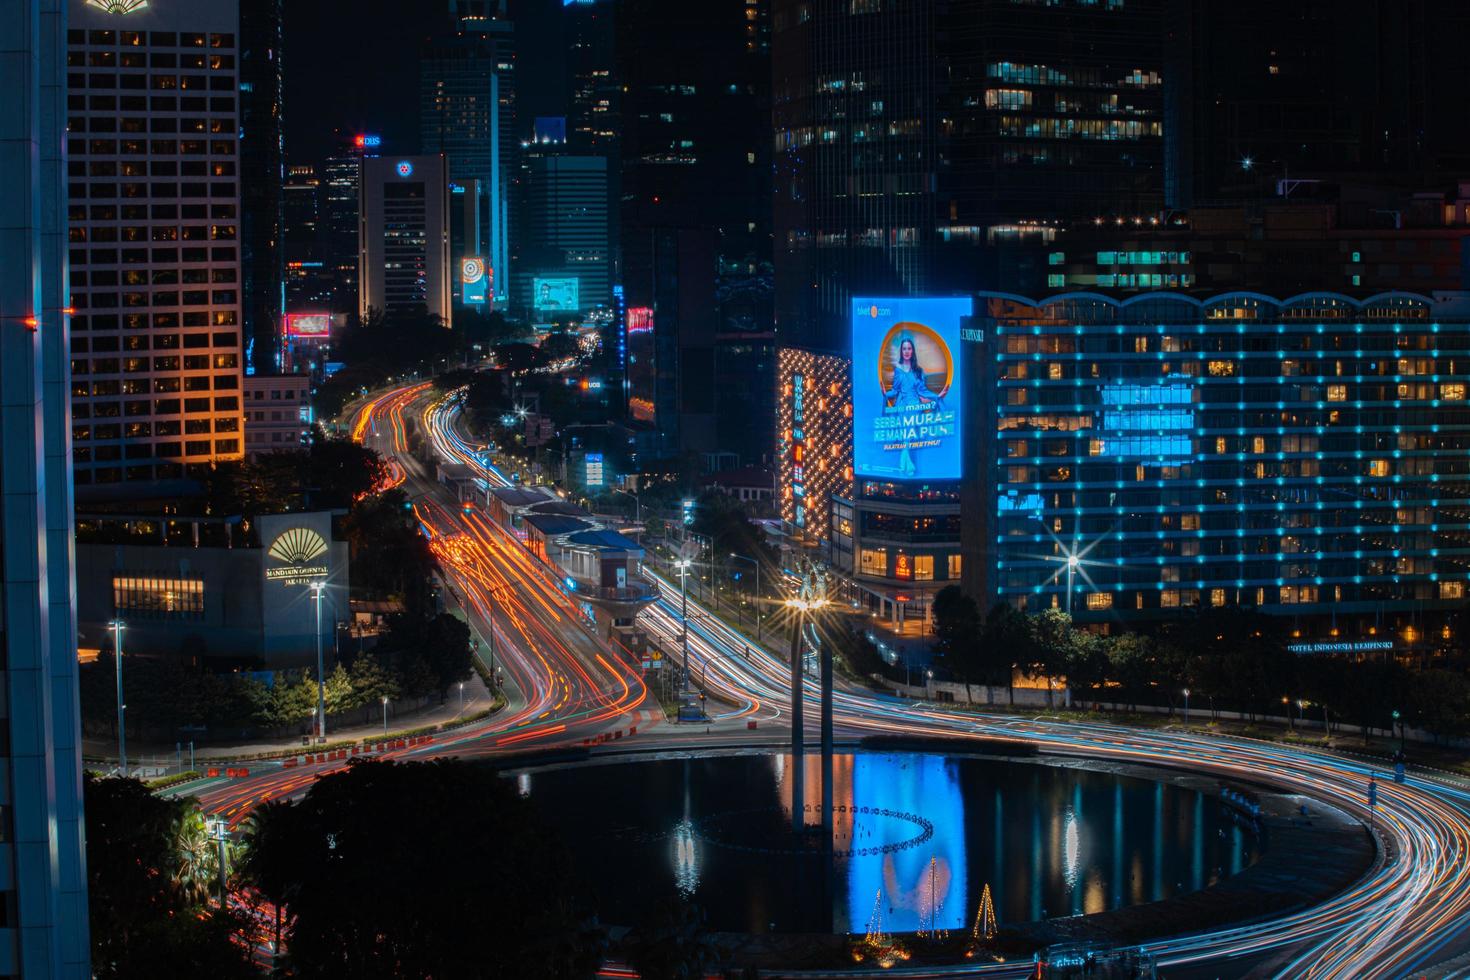 notte paesaggio urbano, e traffico leggero di autostrada nel lento velocità otturatore movimento effetto e rumore.giacarta, Indonesia .gennaio 9 2023 foto